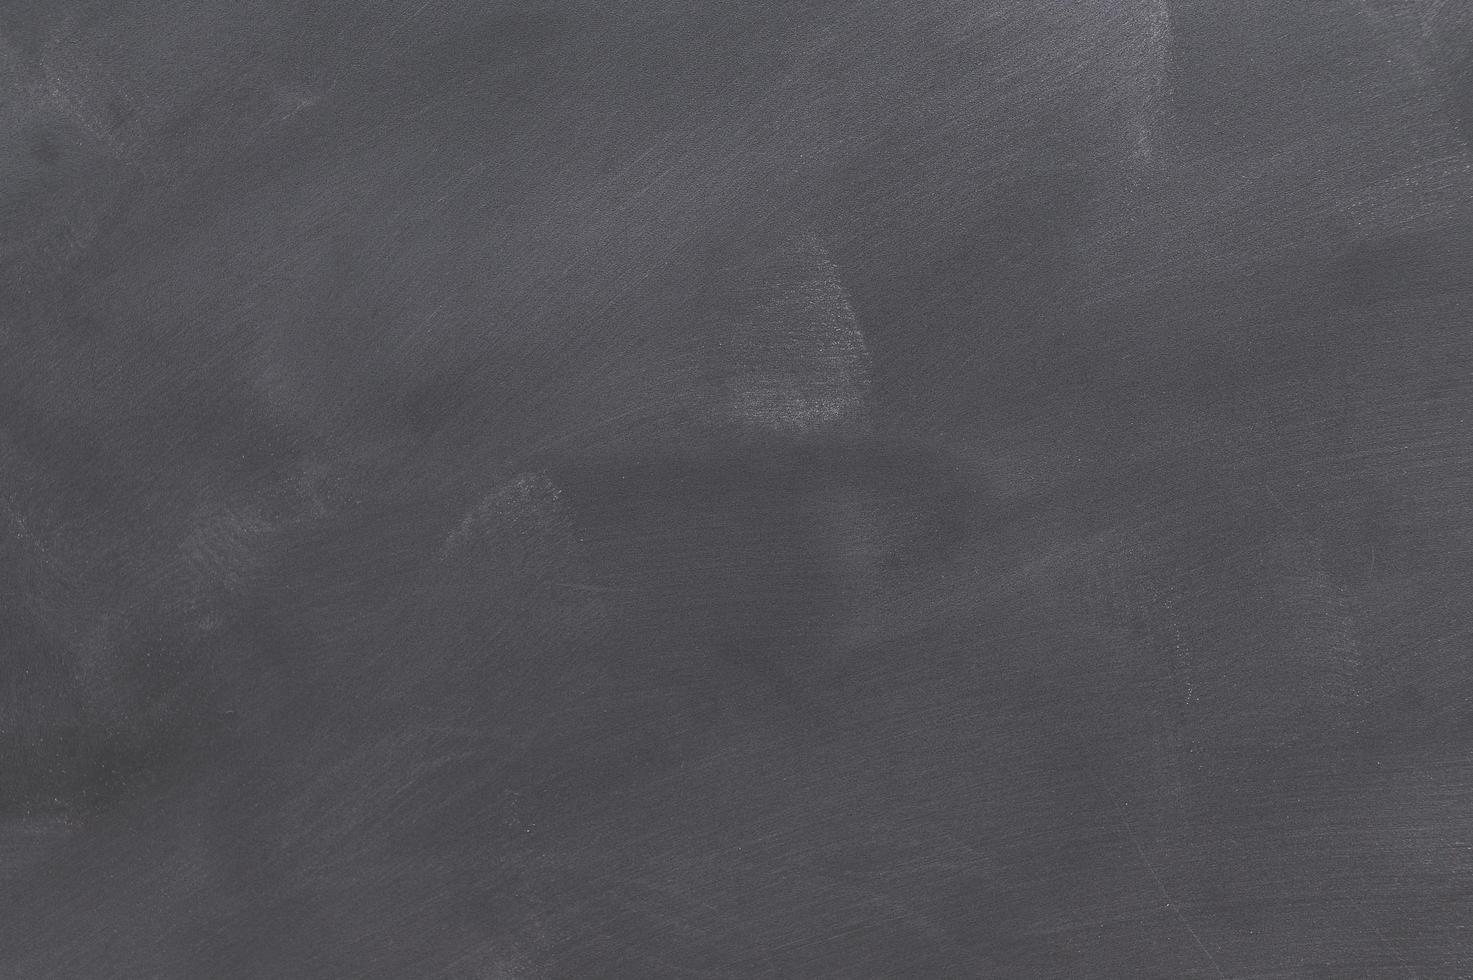 fond de tableau noir taché de poussière de craie photo